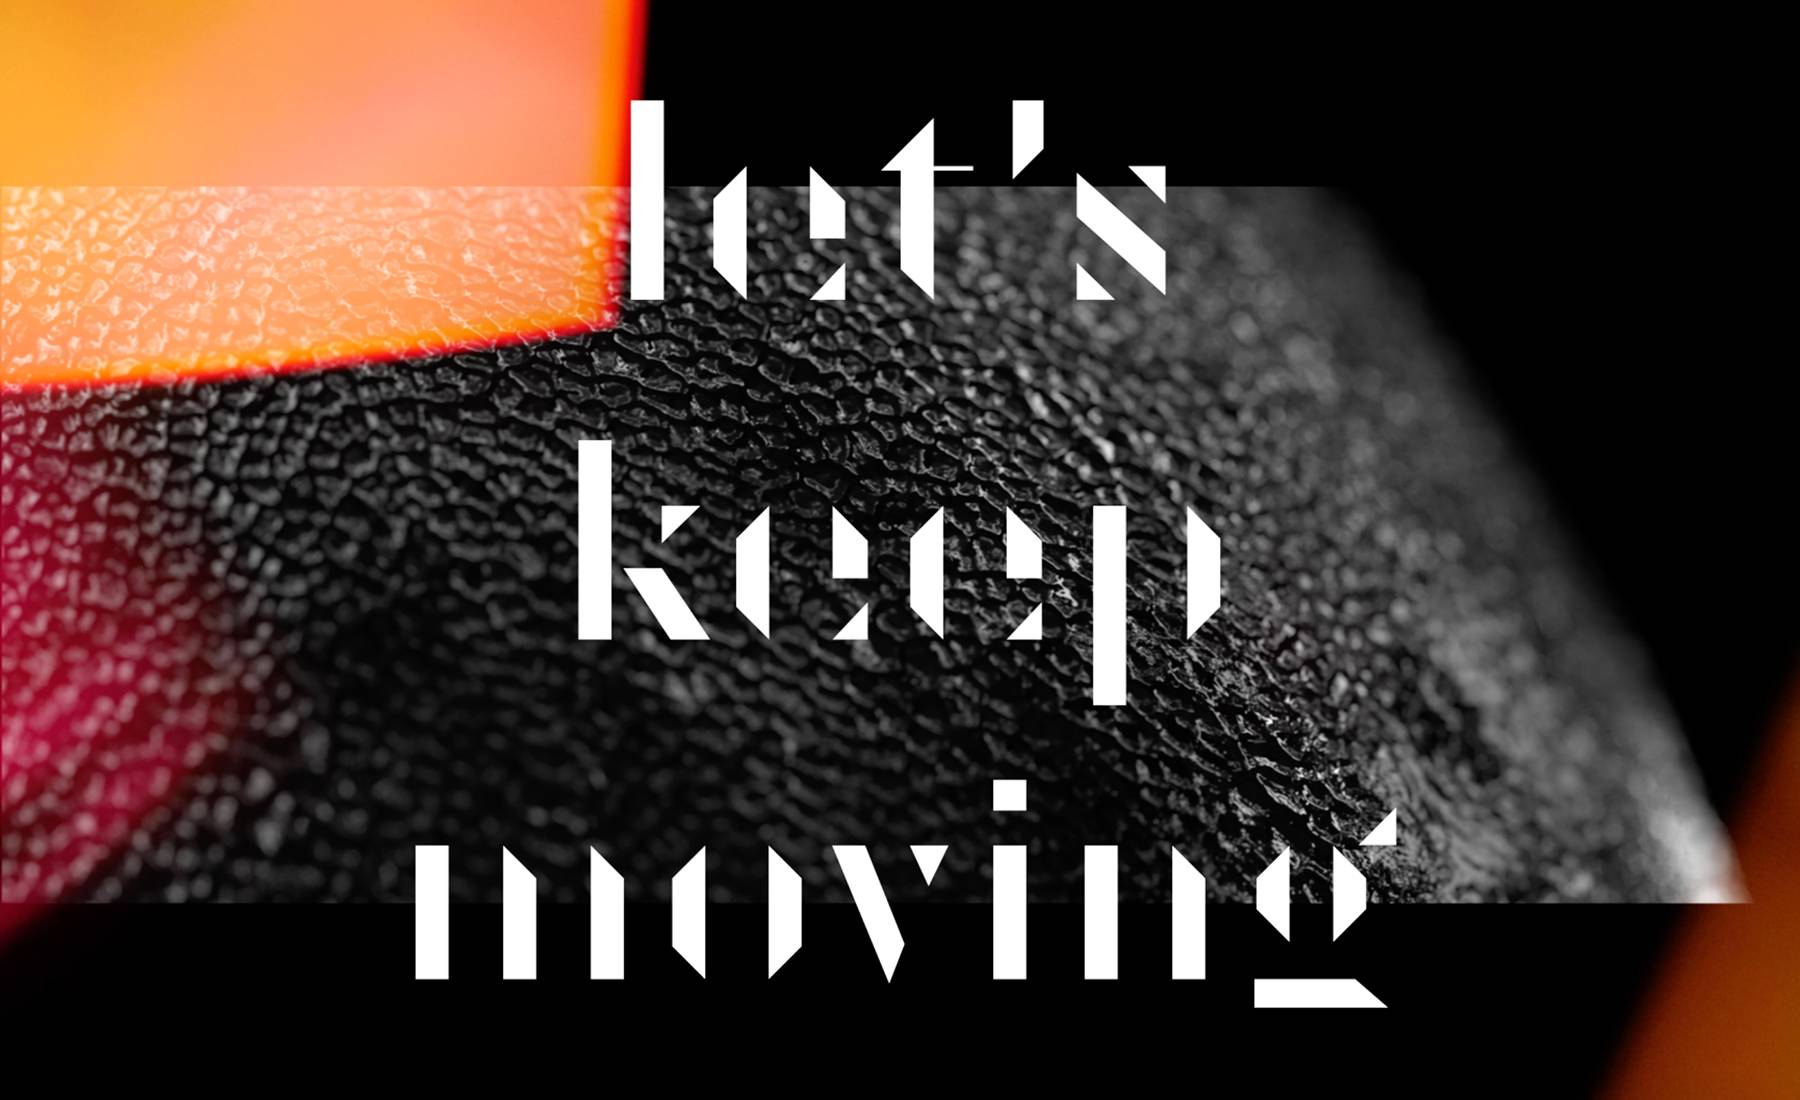 Kastuvas keep. Keep moving forward. Keep on moving kastuvas feat. Emie.